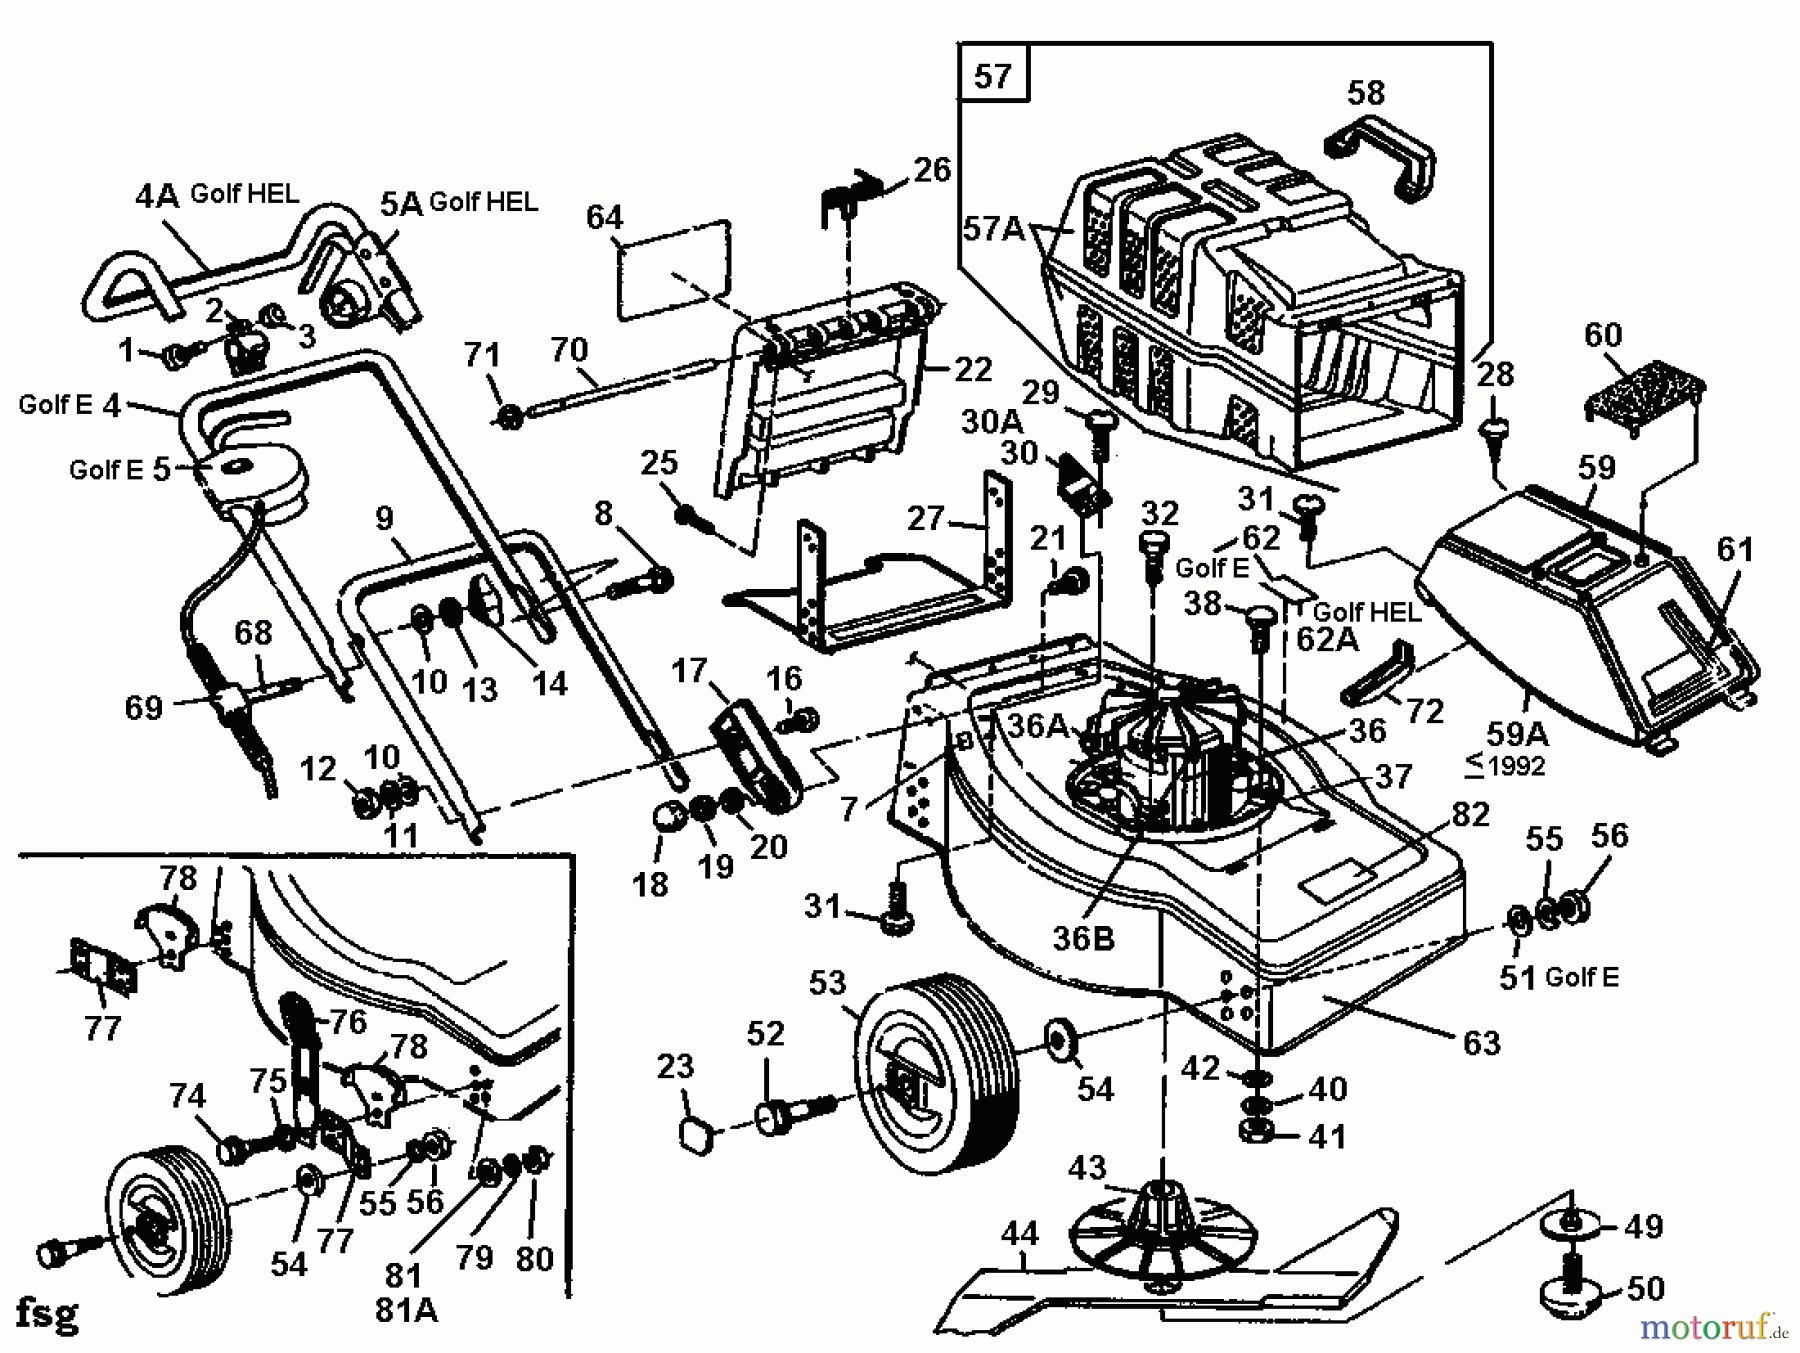  Golf Tondeuse électrique HEL 02881.07  (1991) Machine de base